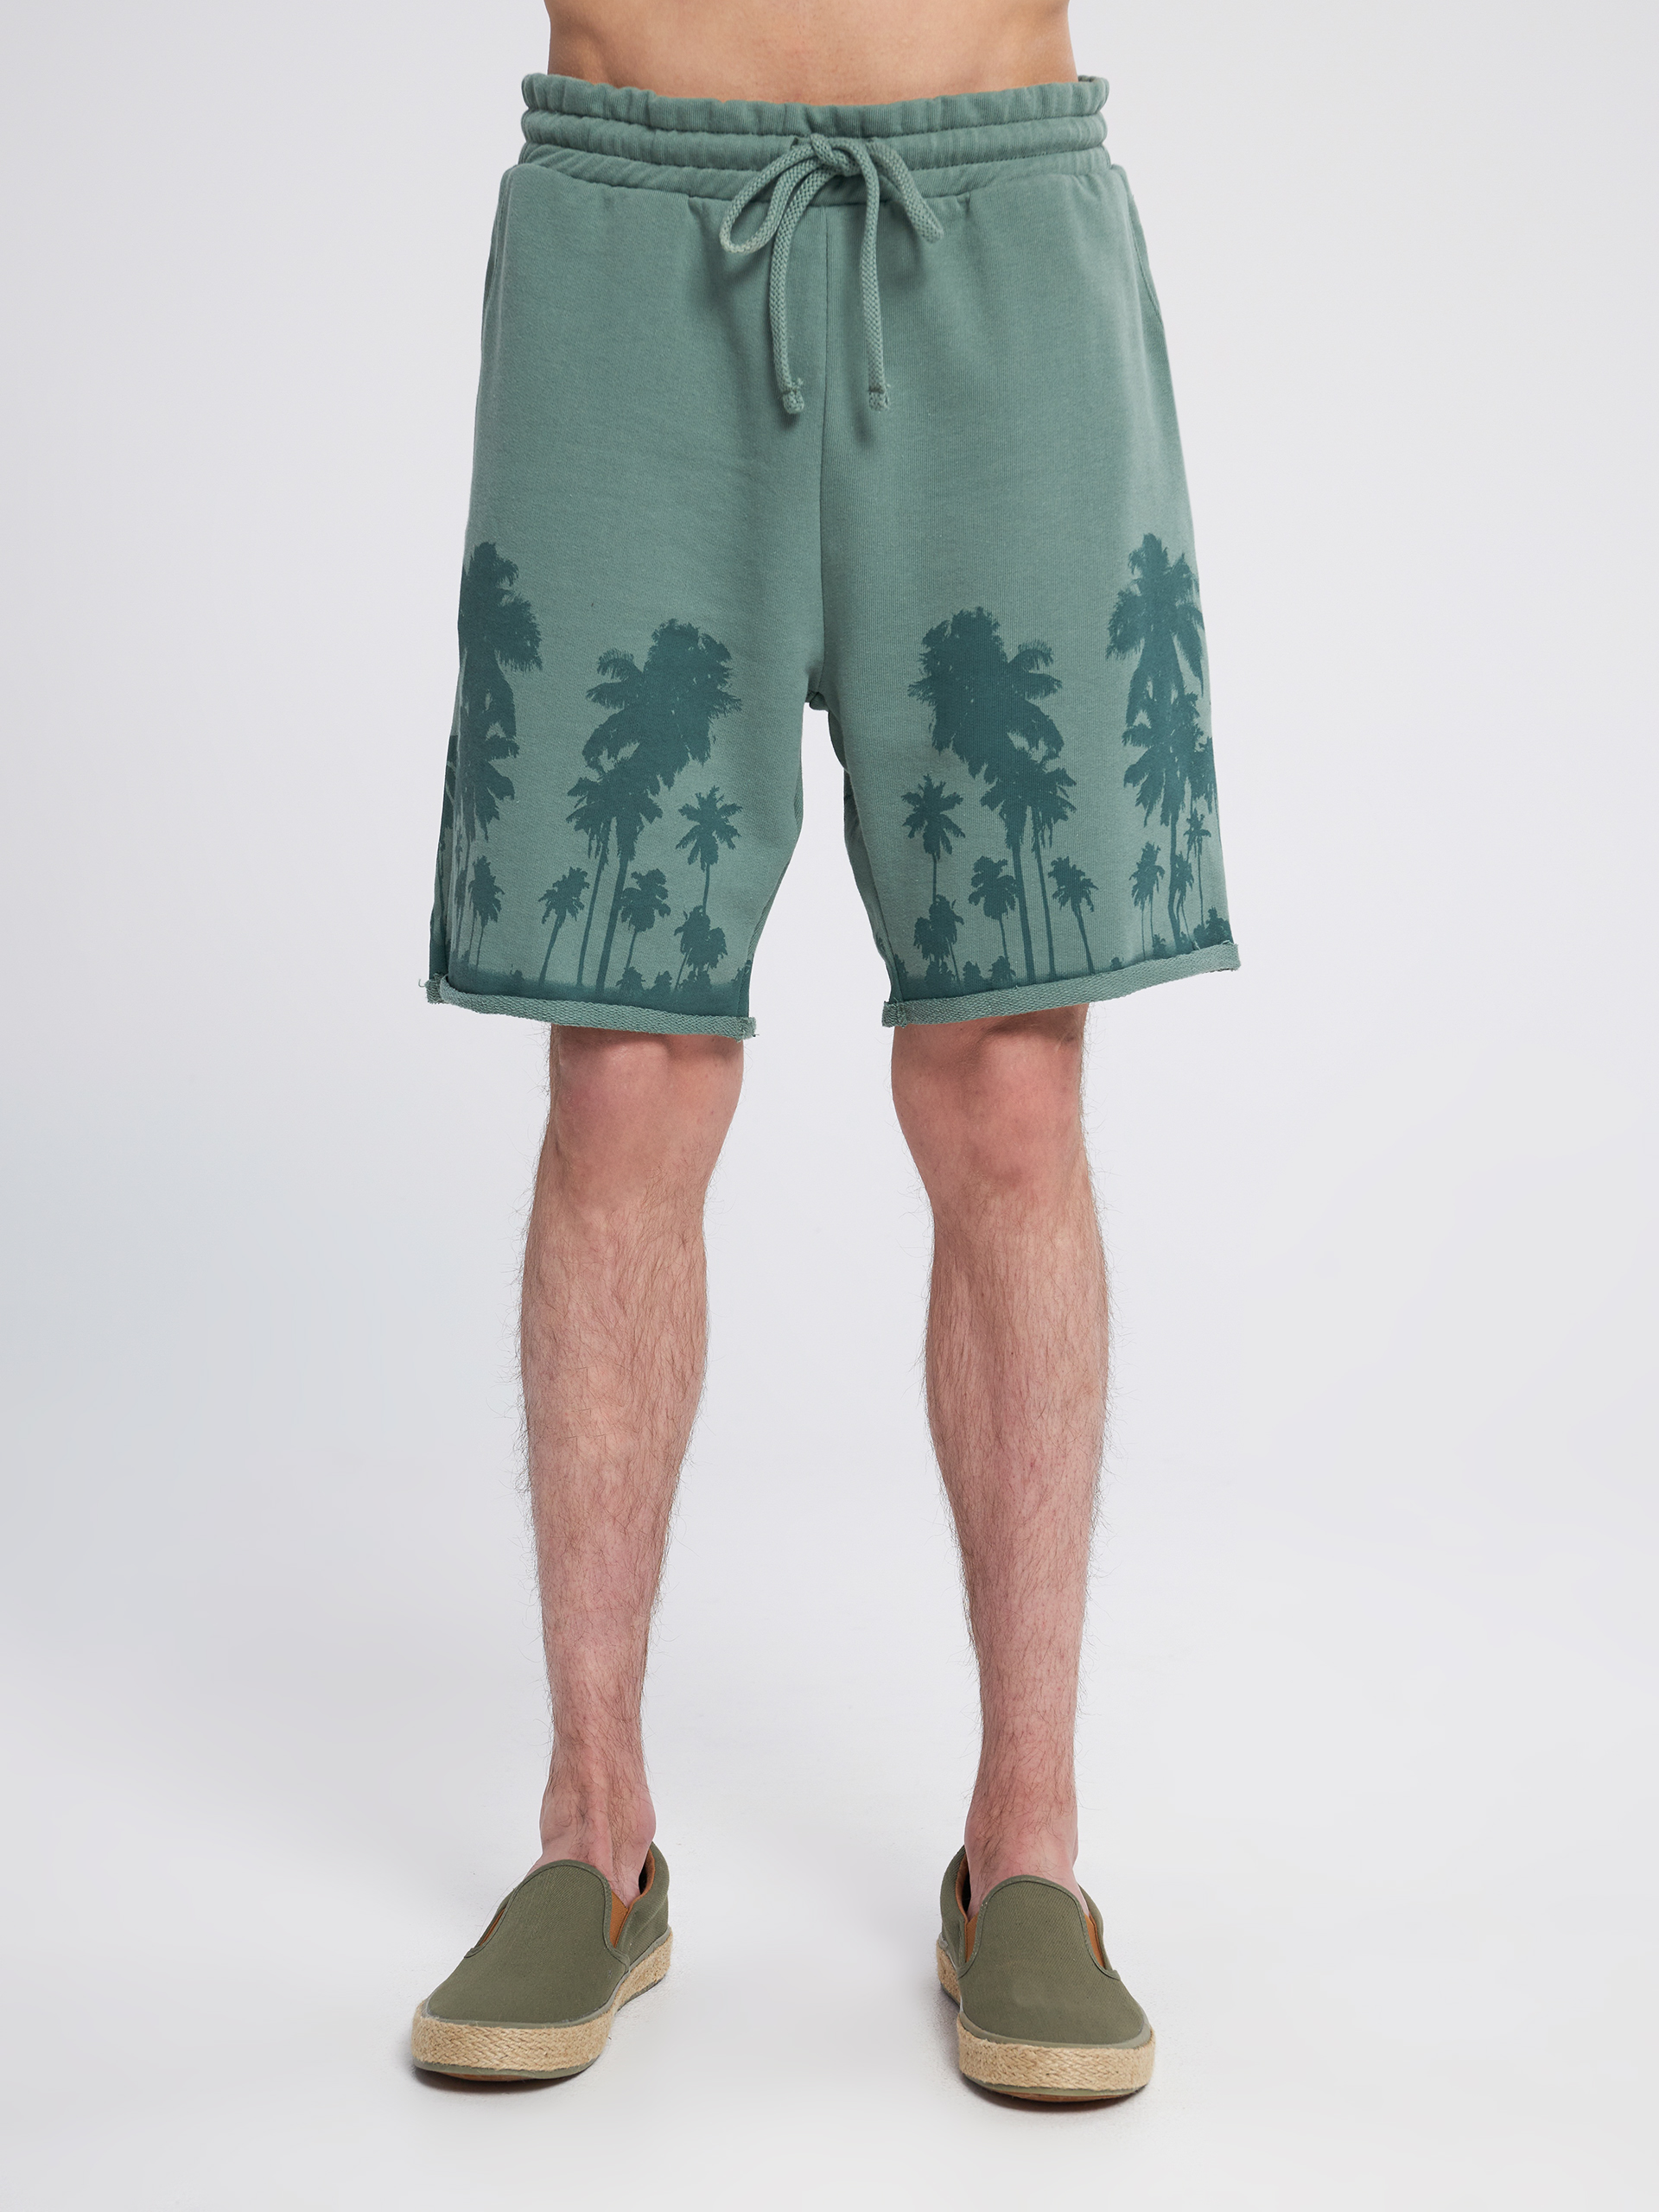 шорты с принтом пальм